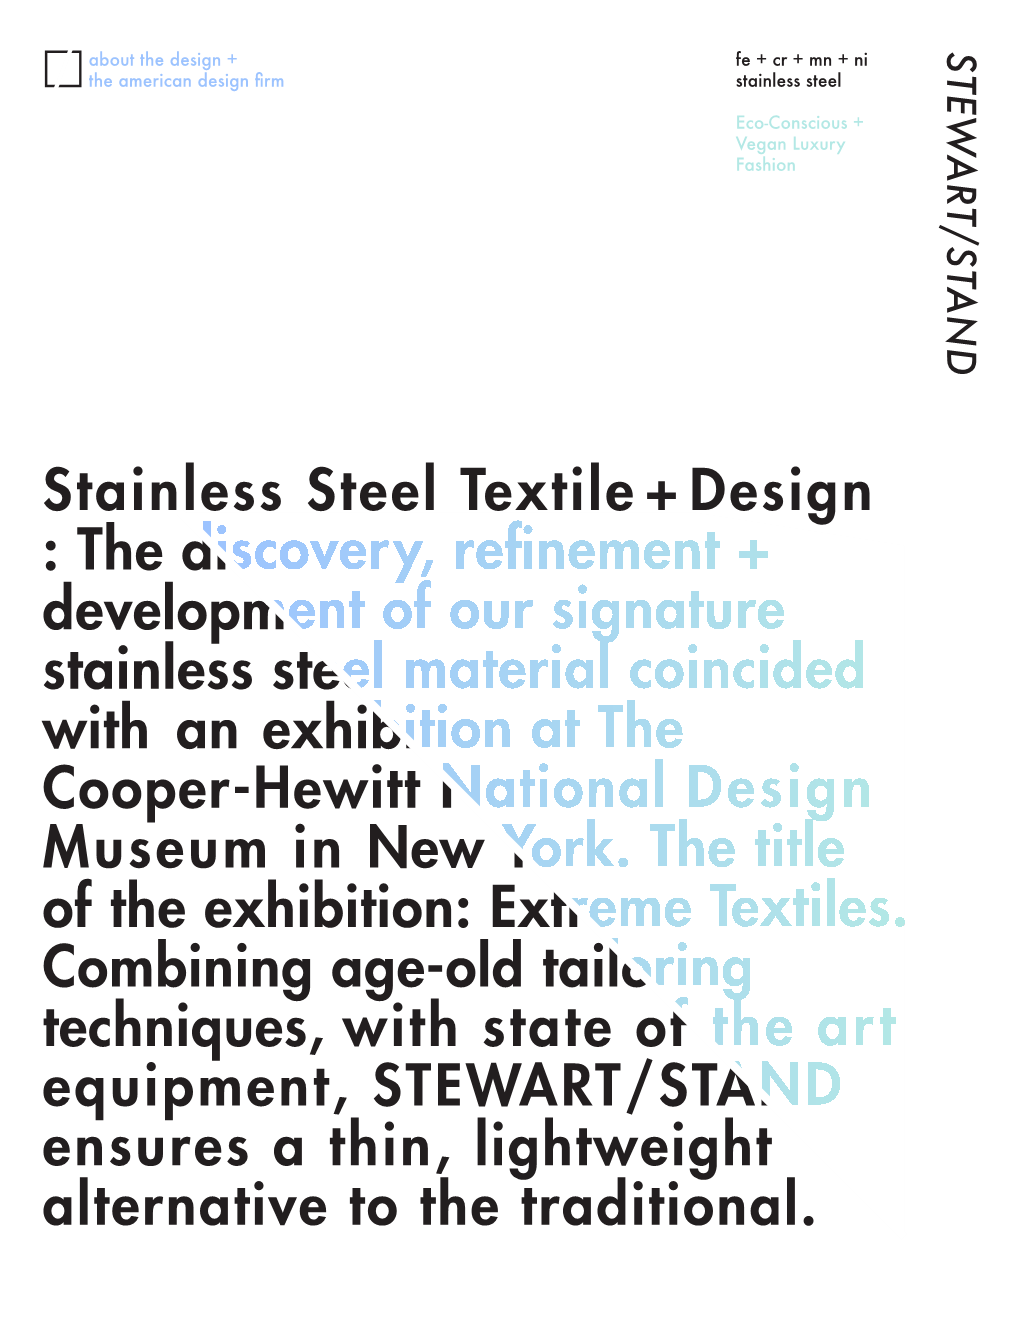 STEWART/STAND, an Amerian Design Firm